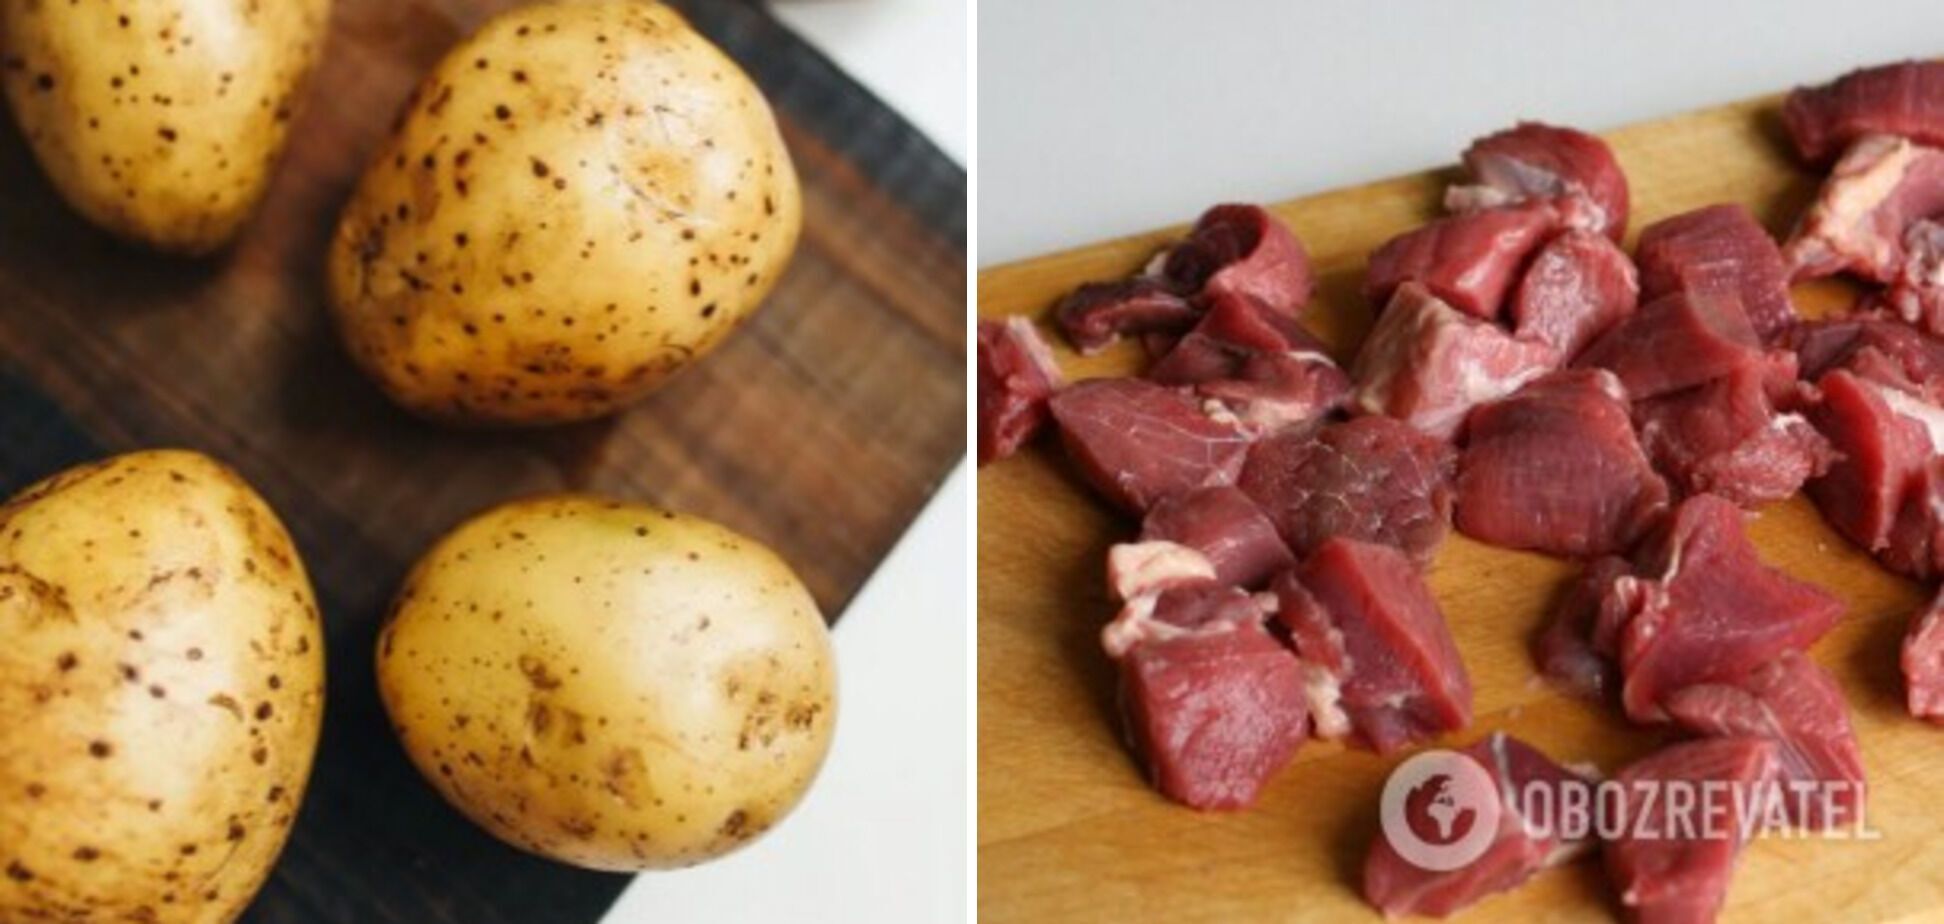 Мясо и картофель для колбасы